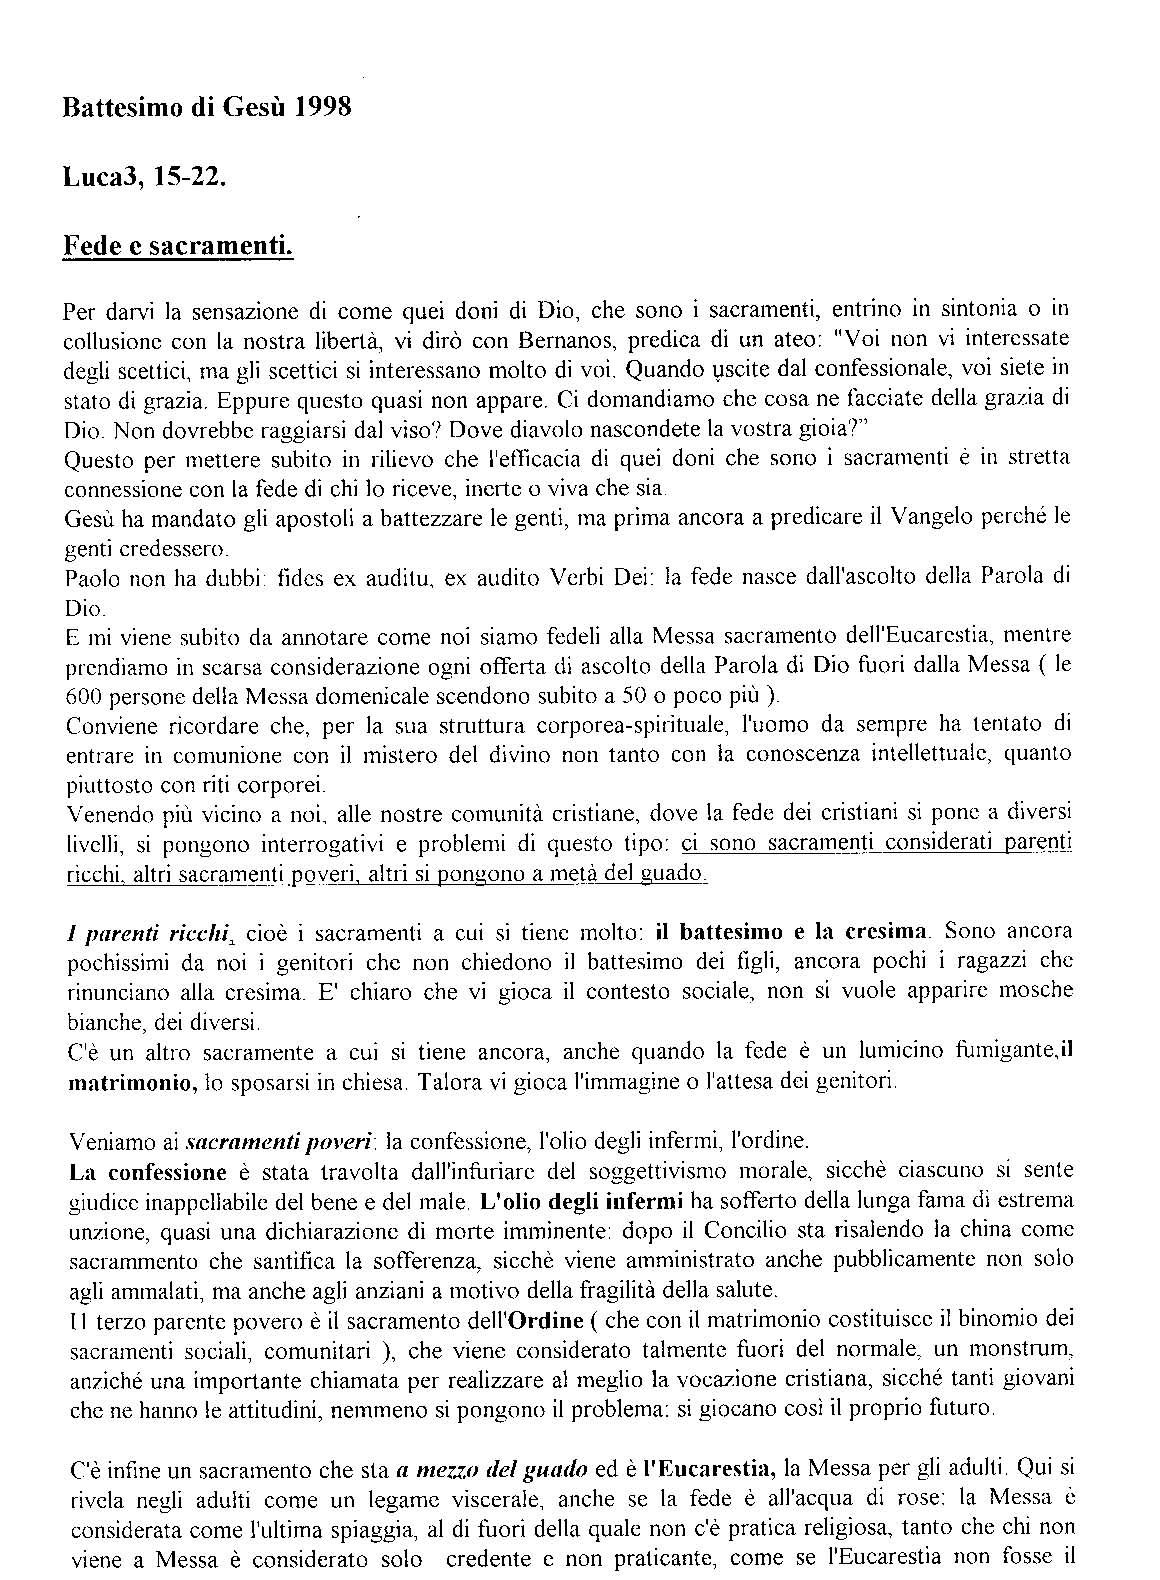 Battesimo_di_Gesu98_Fede_e_sacramenti.pdf